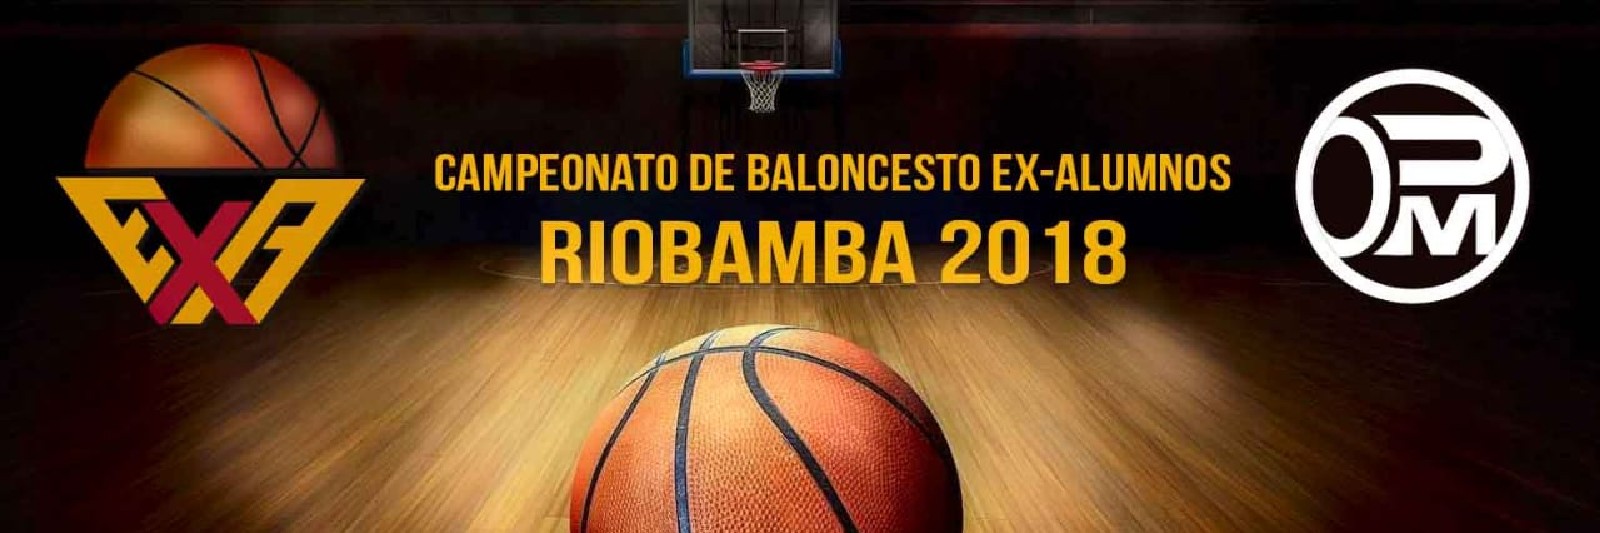 Campeonato De ExAlumnos Riobamba 2018